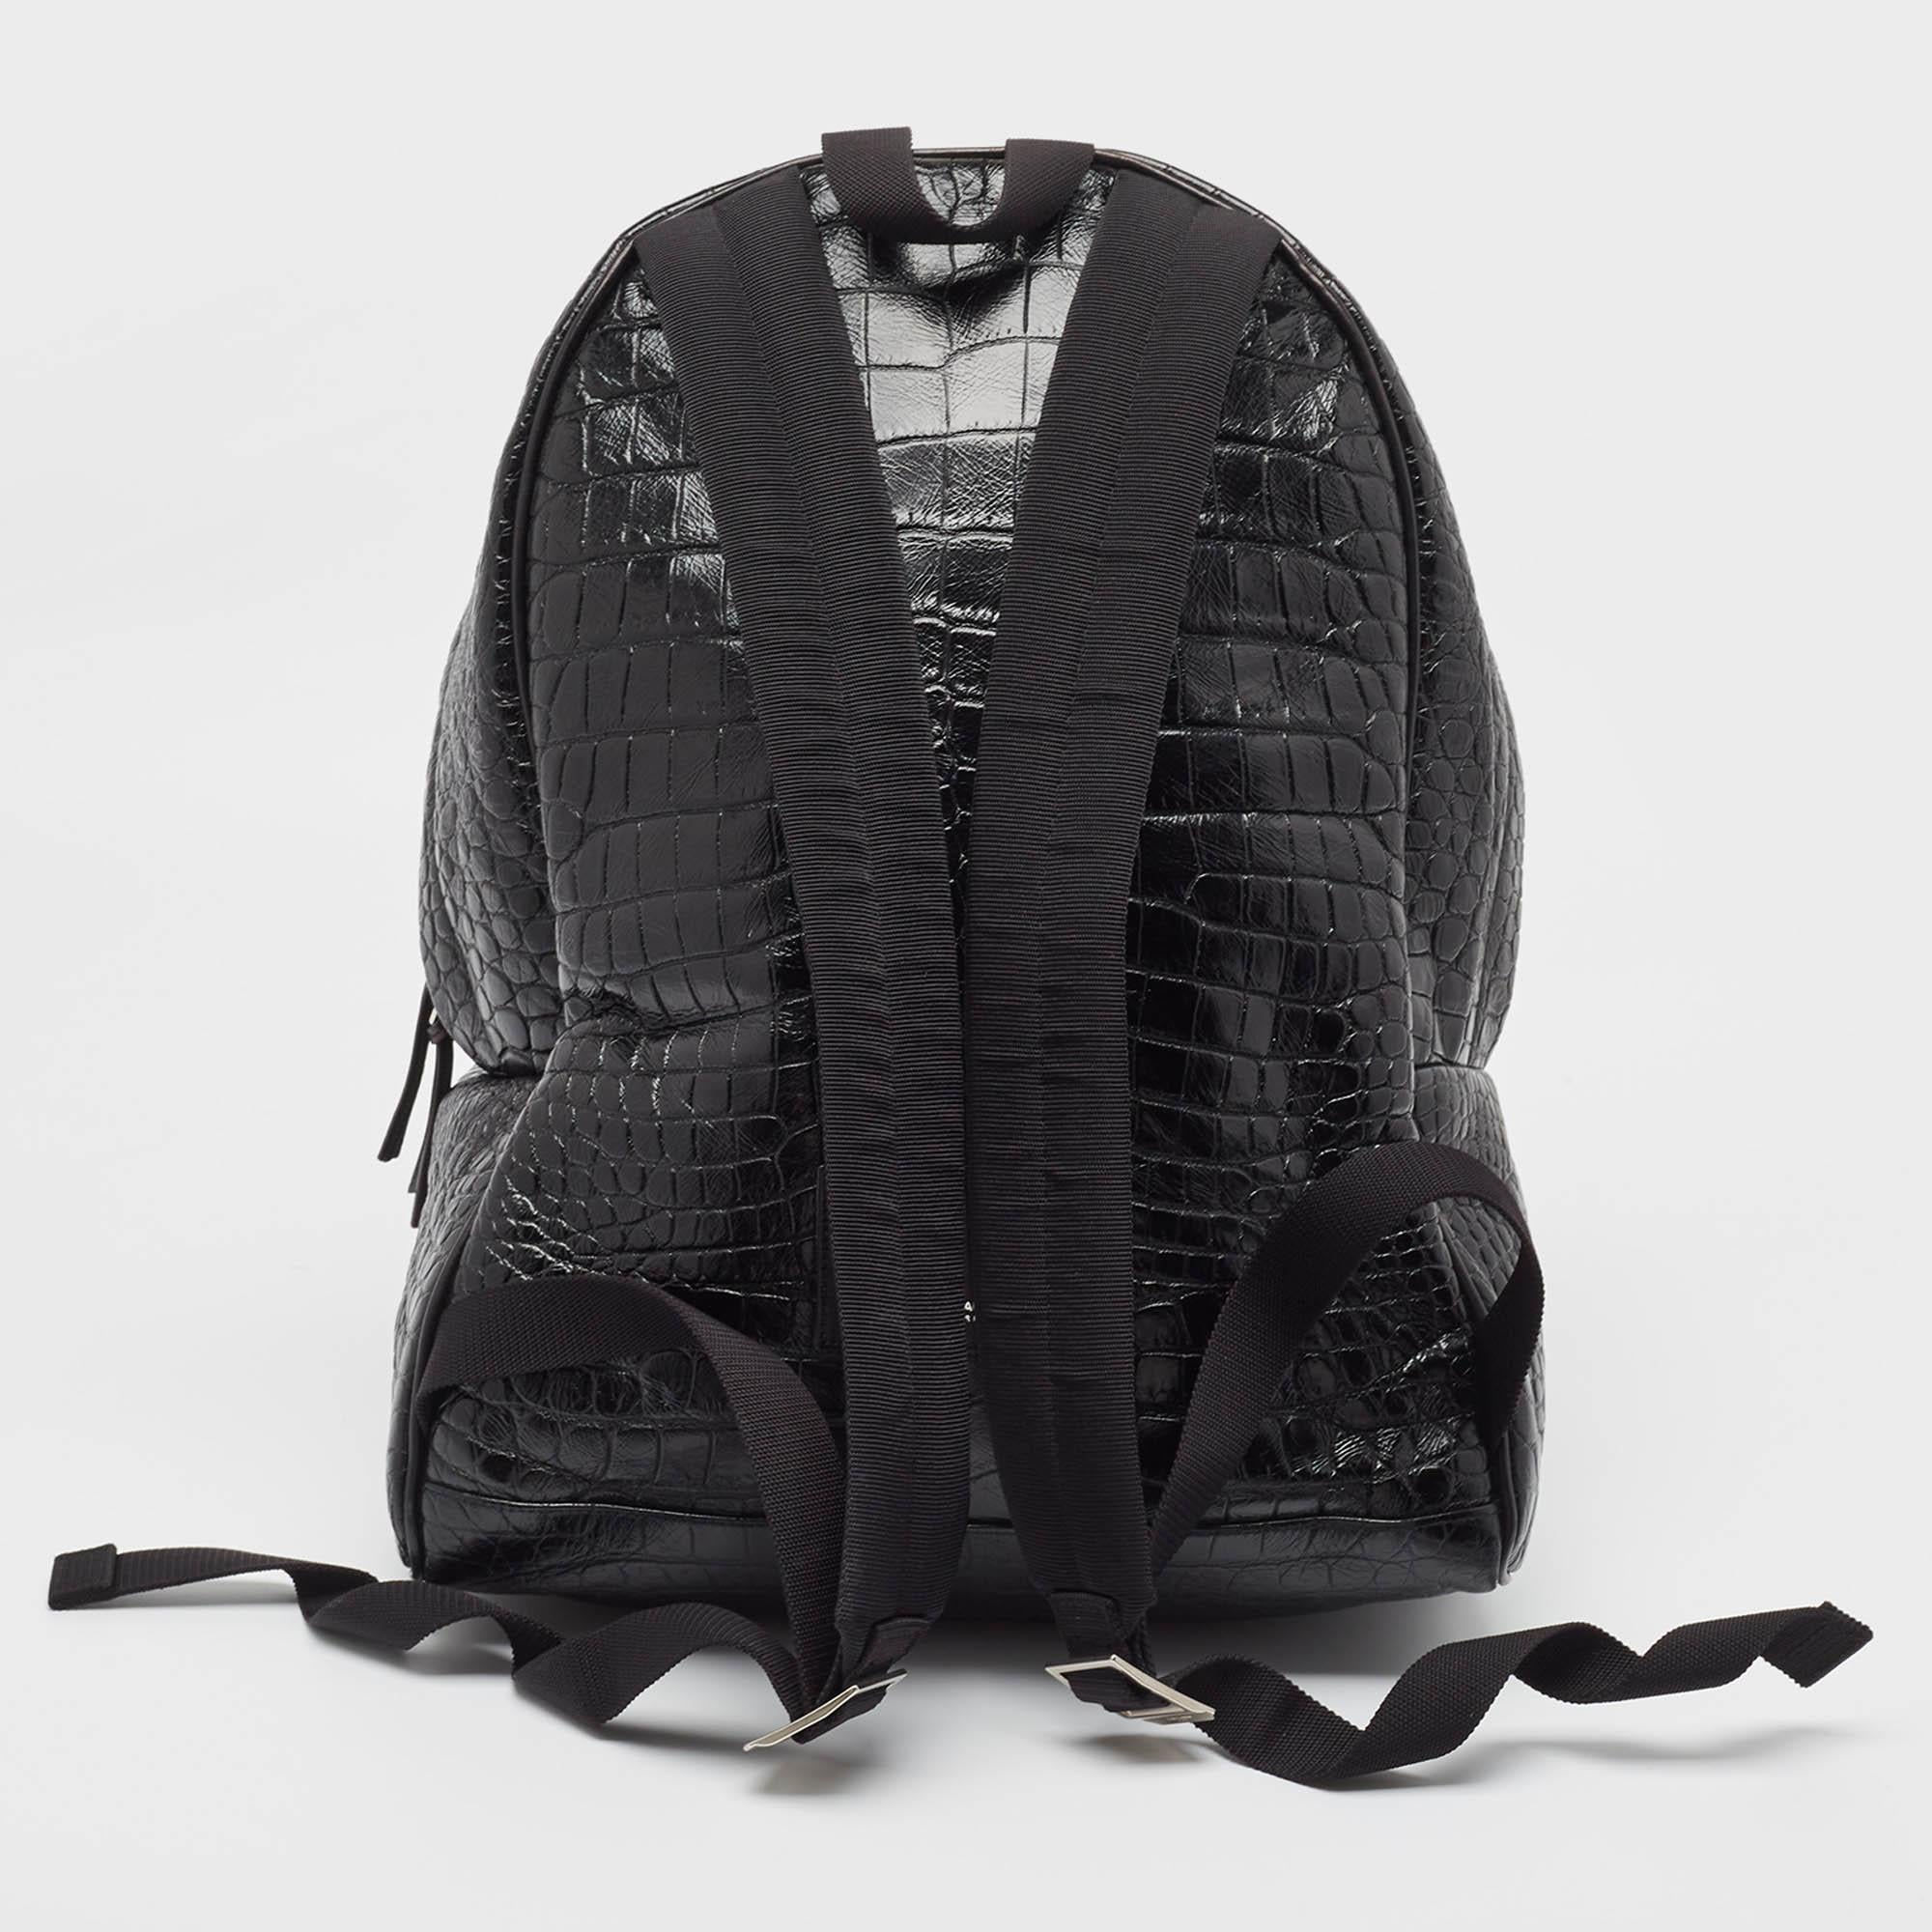 Dieser praktische und modische Rucksack eignet sich sowohl für den täglichen Gebrauch als auch als modisches Accessoire. Er hat ein elegantes Design und einen geräumigen Innenraum für Ihre Habseligkeiten. Zwei Schulterriemen machen sie bereit, Ihnen